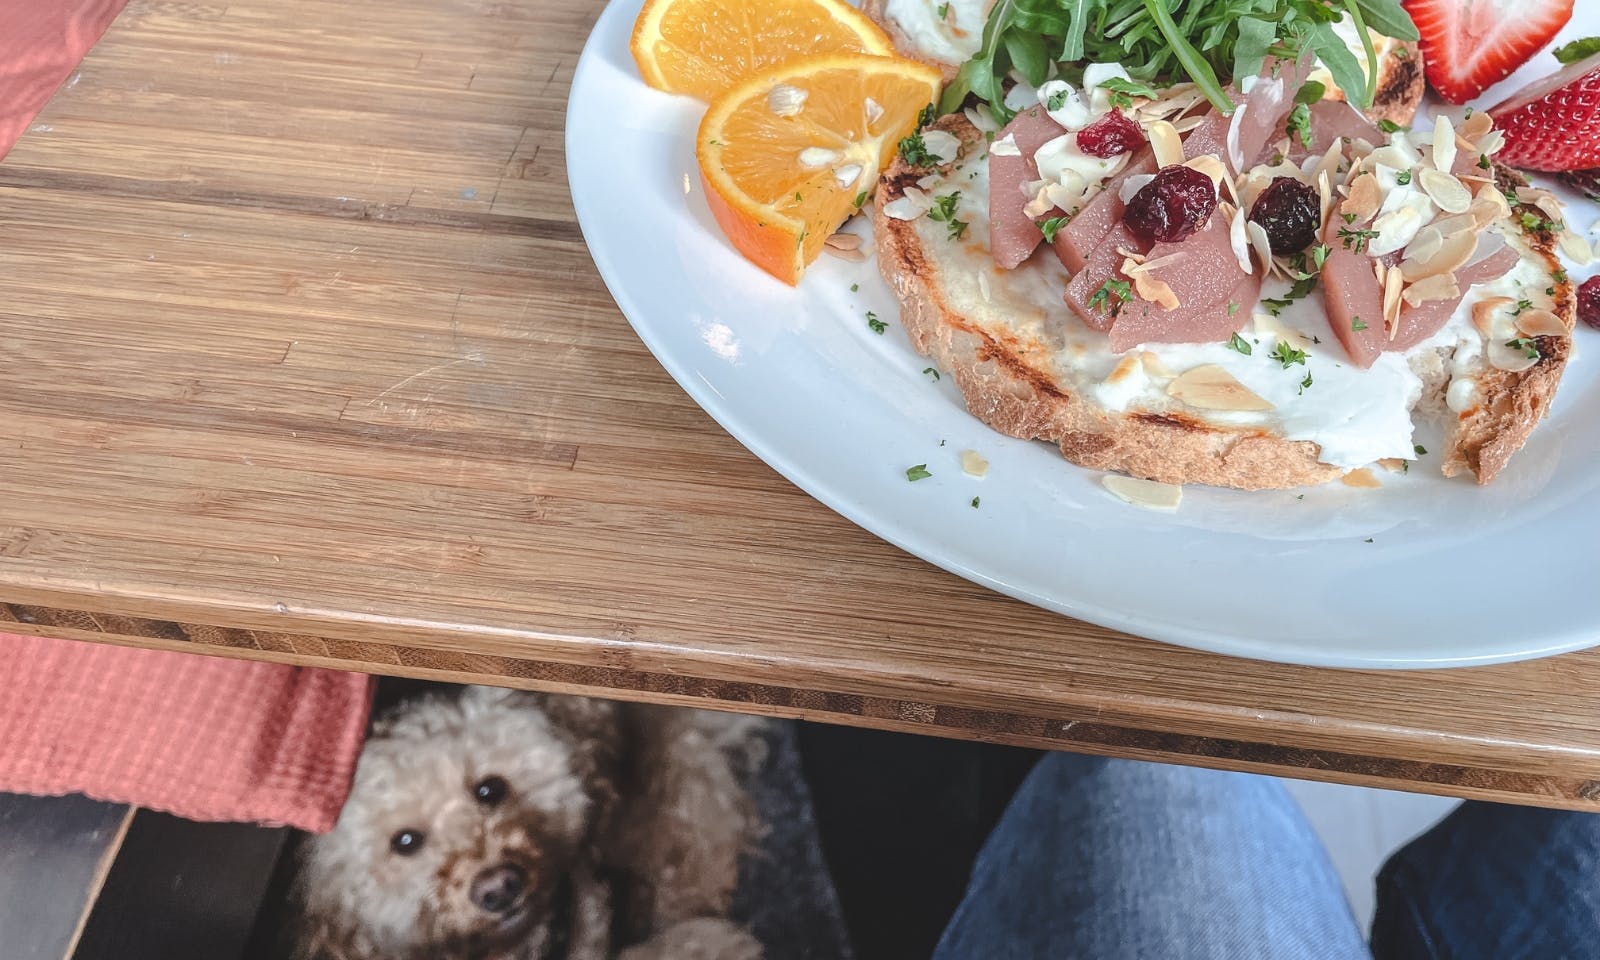 Im Zweifelsfall ist es immer empfehlenswert, das Café-Personal zu fragen, ob Hunde erlaubt sind und welche Regeln zu beachten sind. Auch sollten Hundebesitzer*innen immer aufmerksam sein und darauf achten, dass sich andere Gäste nicht durch deinen Hund gestört fühlen.